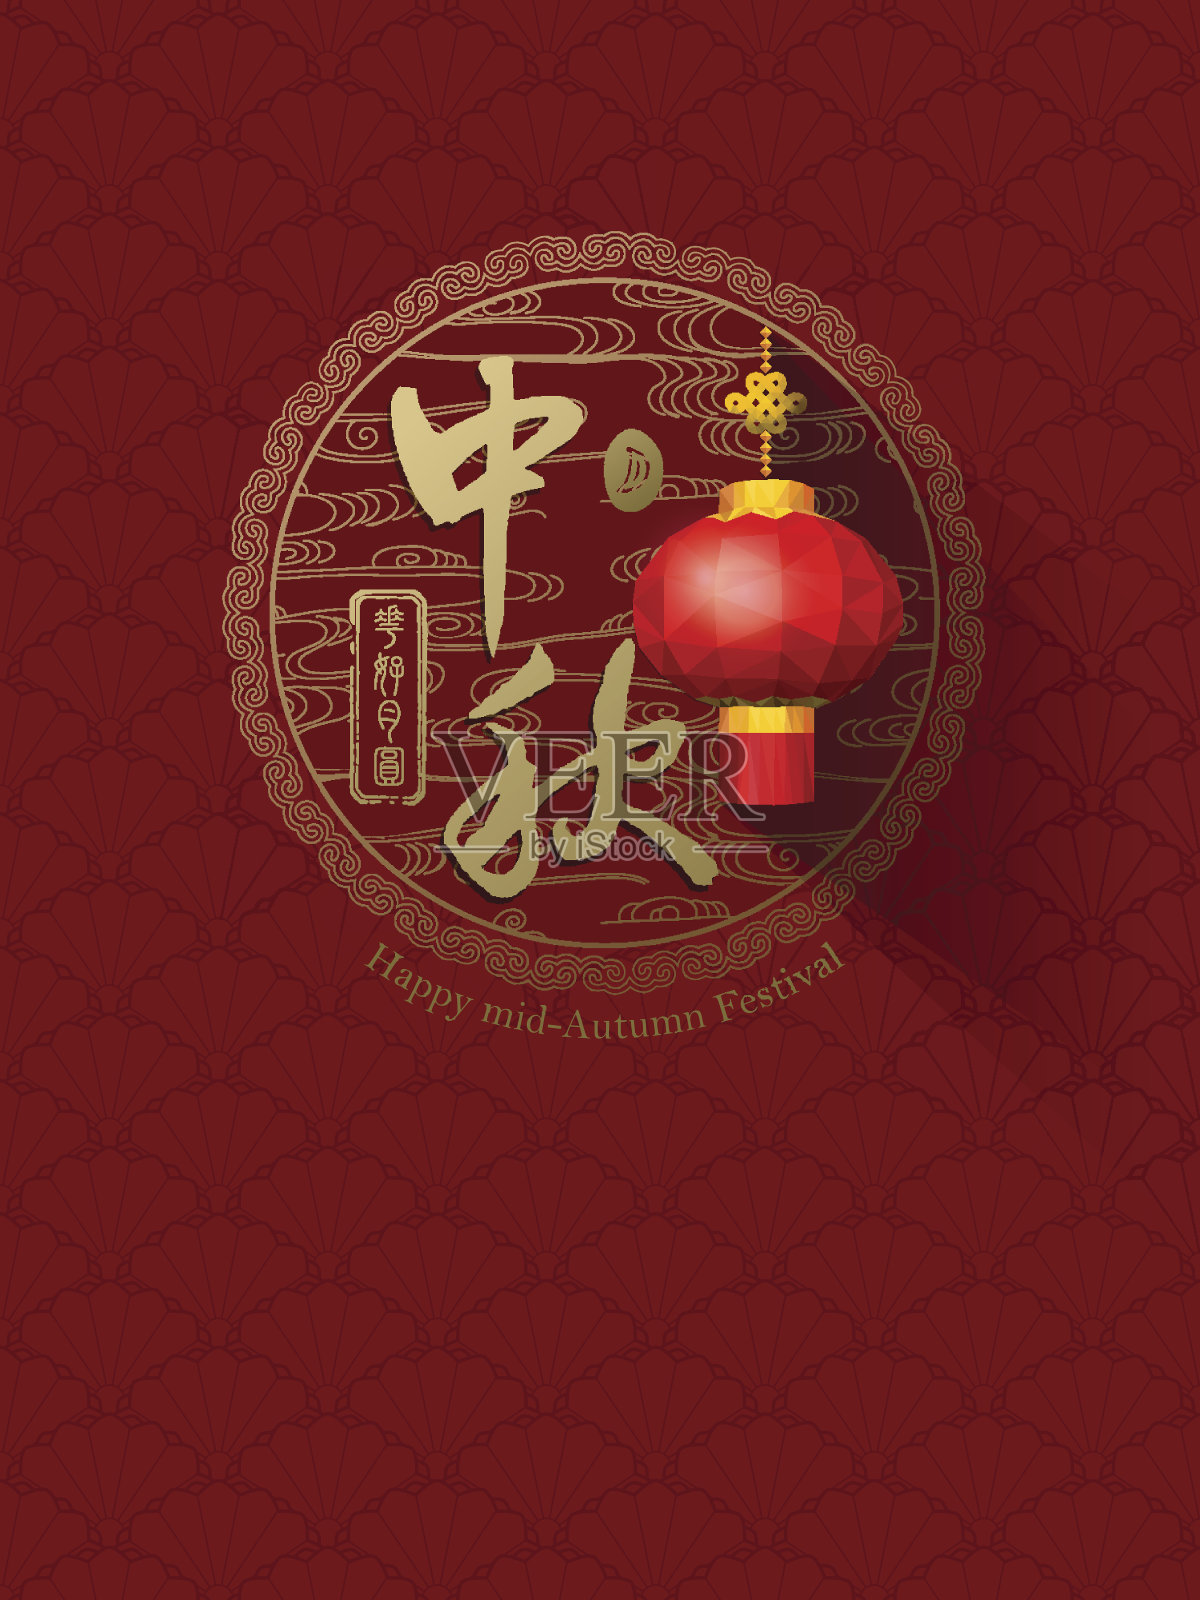 中国的中秋节，汉字“中秋”和印章意为“团圆”设计模板素材